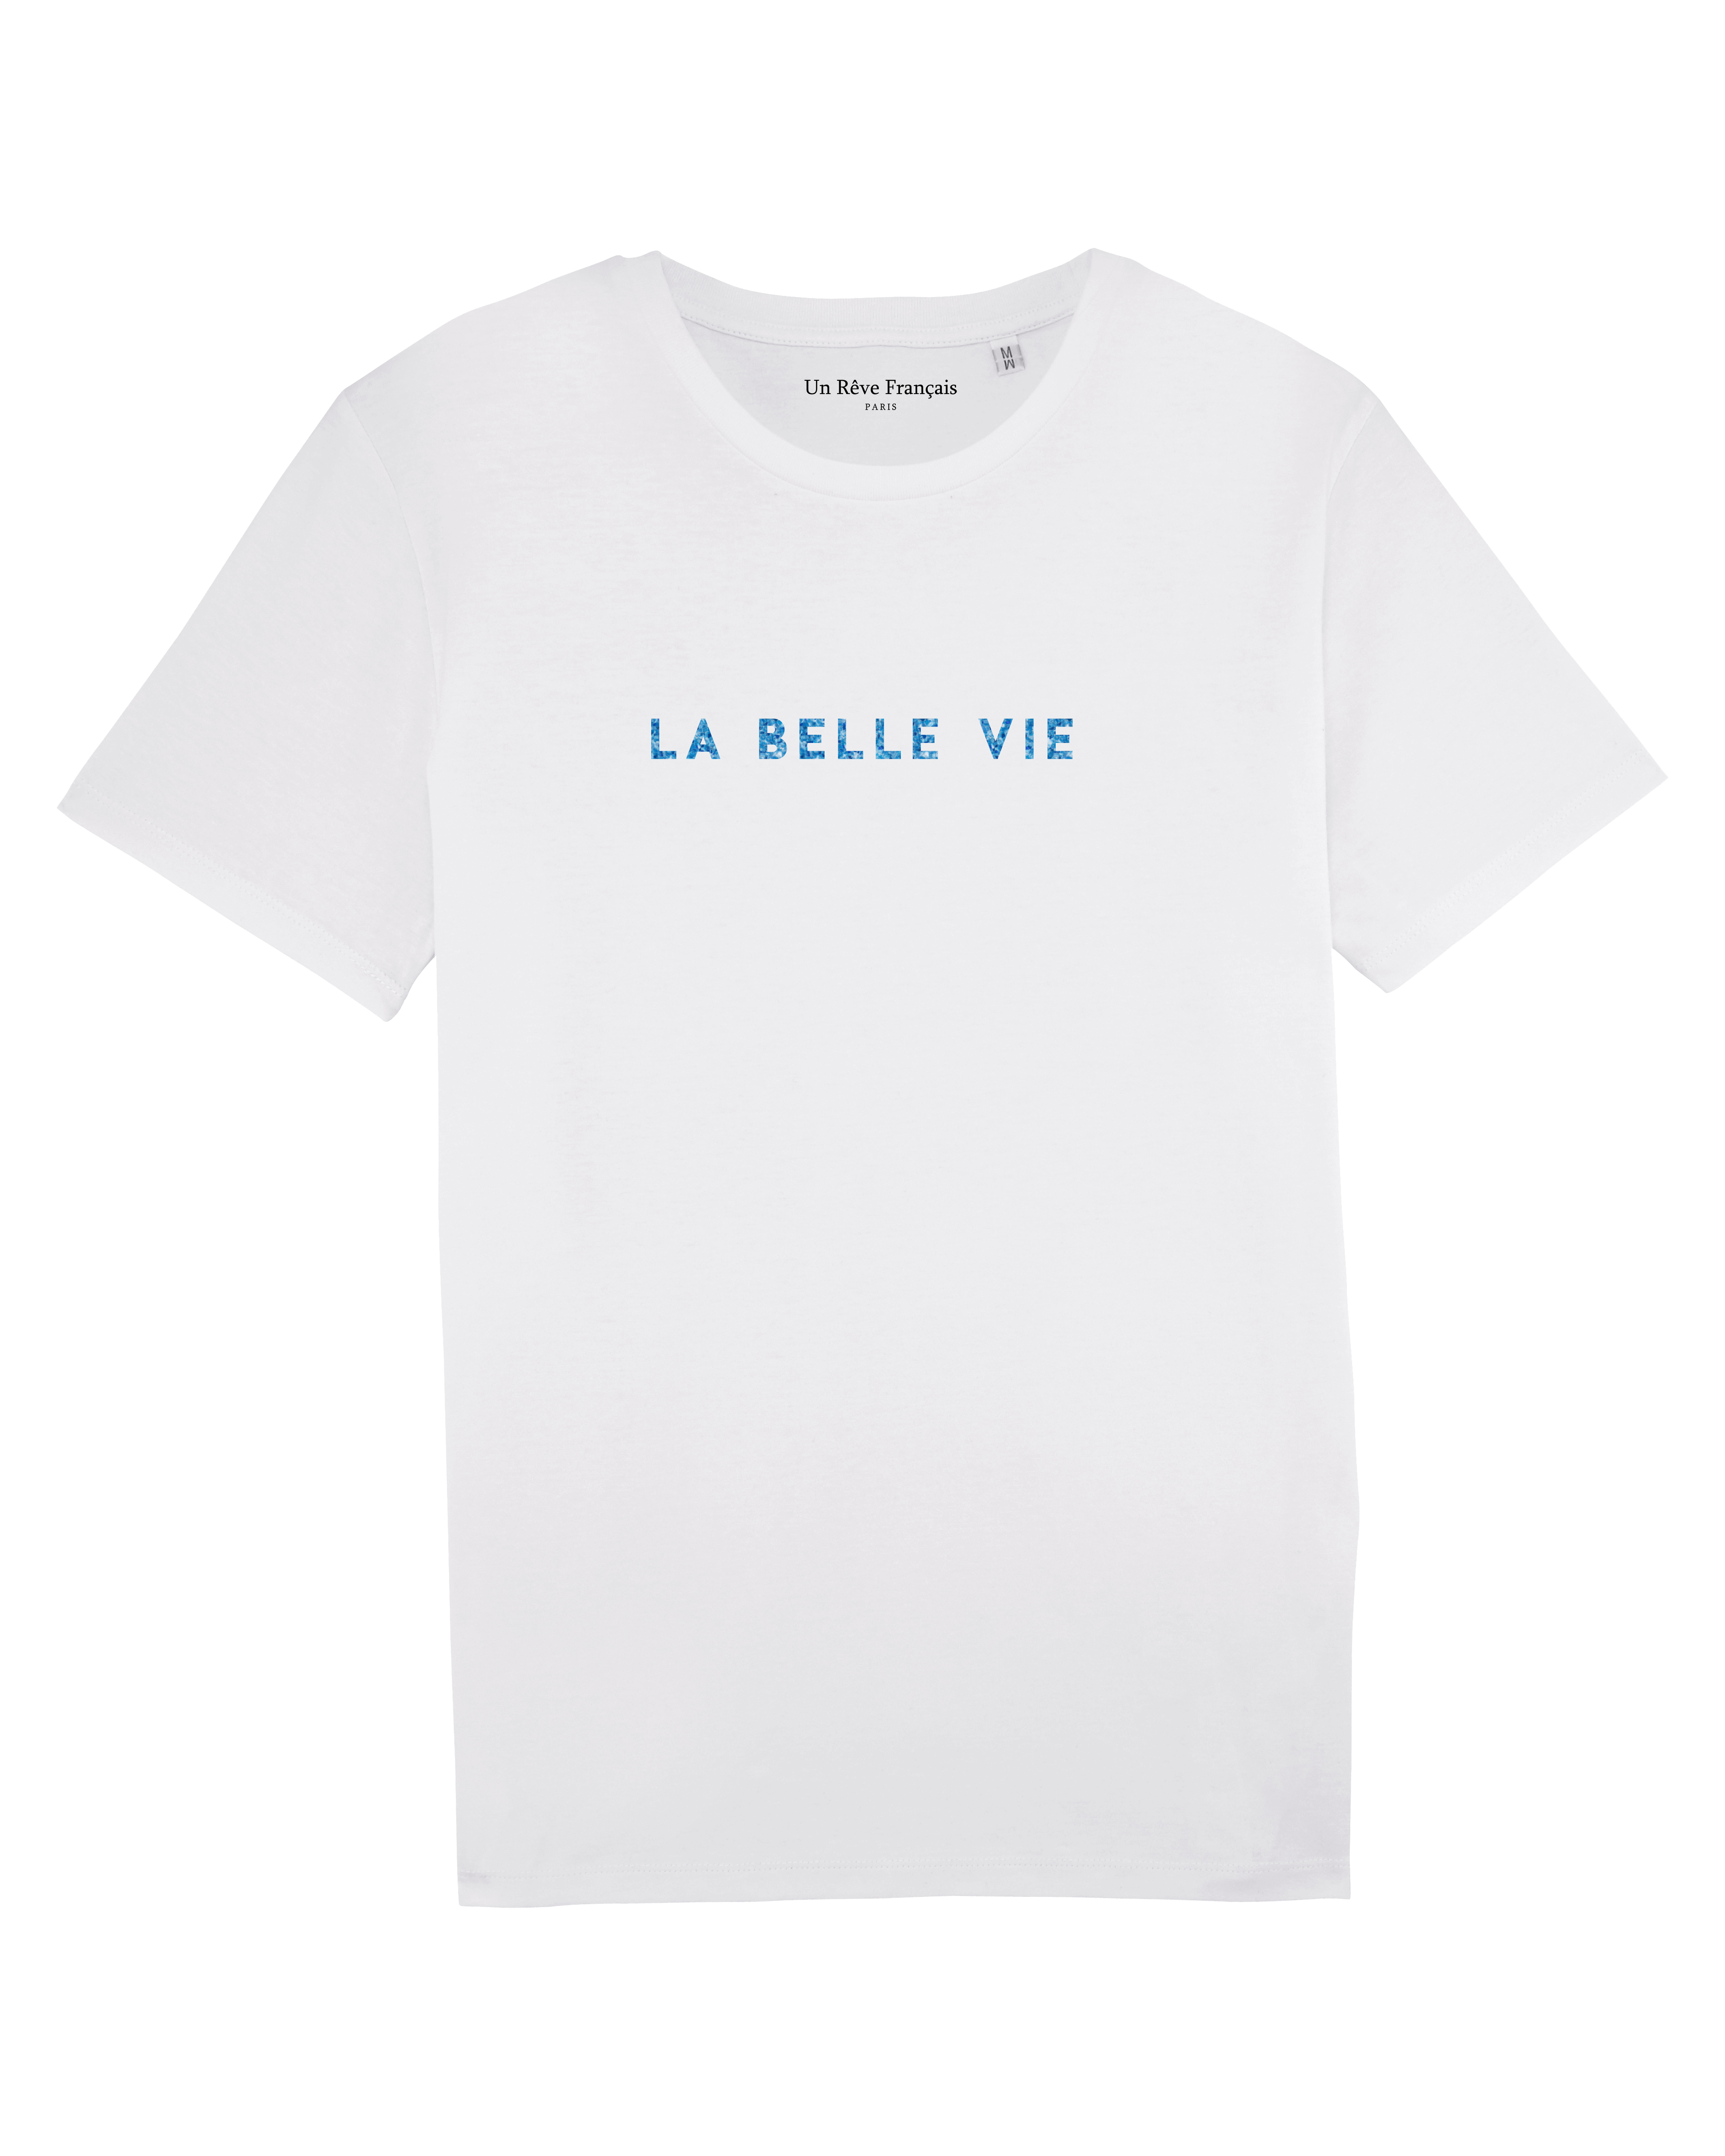 T-shirt "La belle vie"